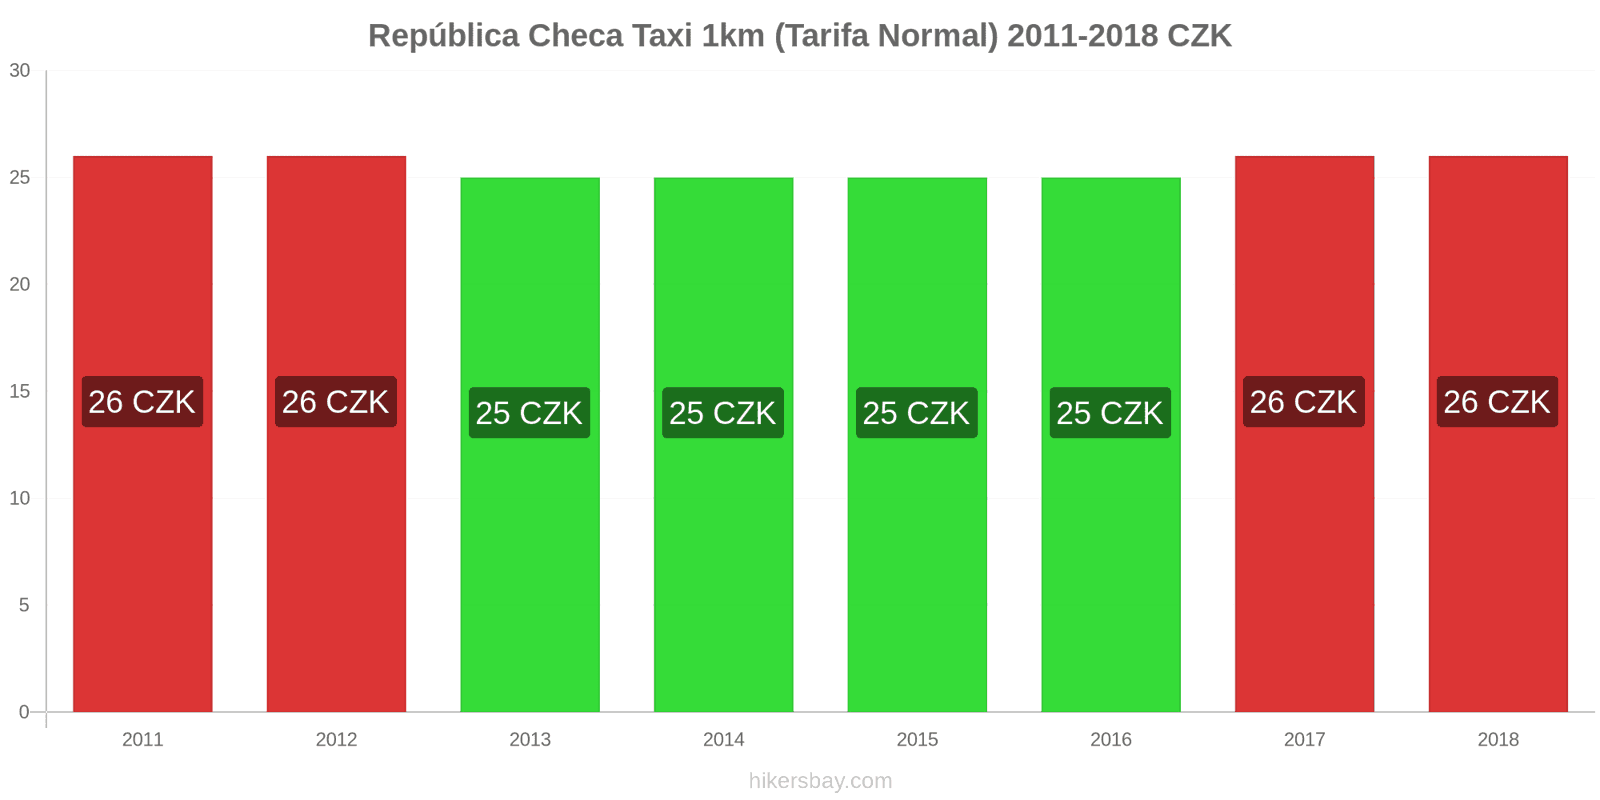 República Checa cambios de precios Taxi 1km (tarifa normal) hikersbay.com